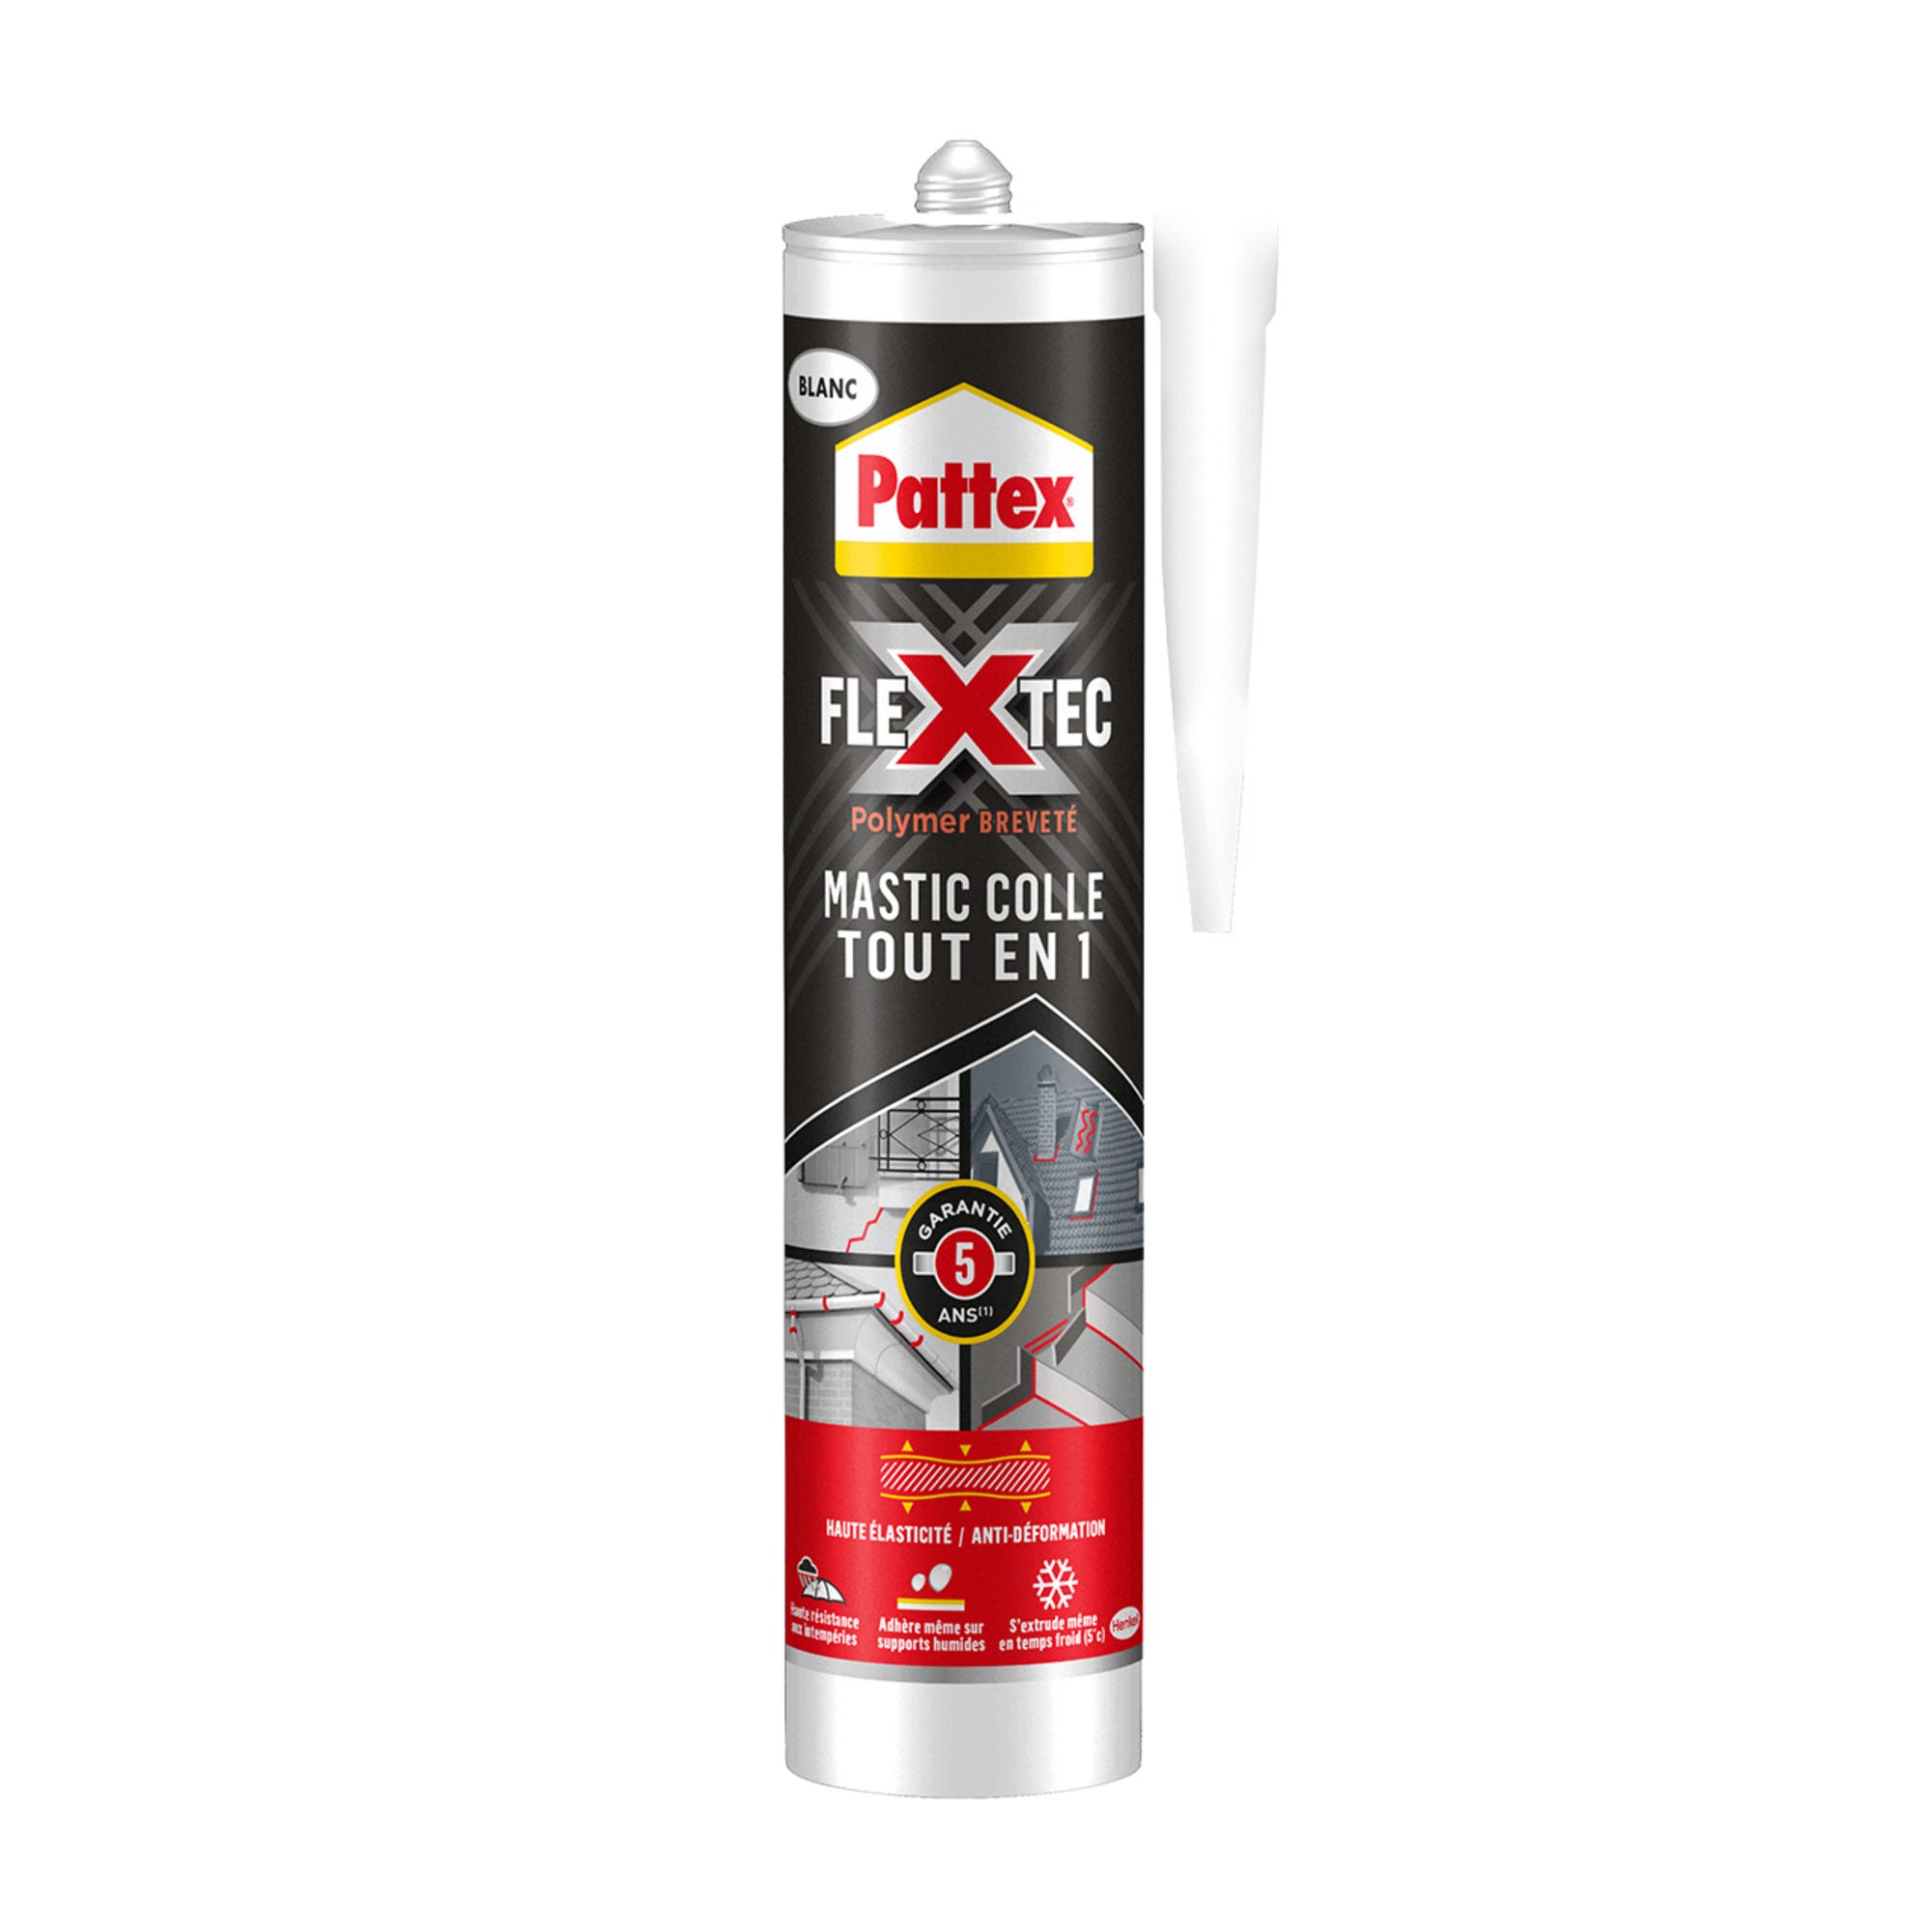 Mastic colle tout en 1 blanc 389 g Flextec - PATTEX 0